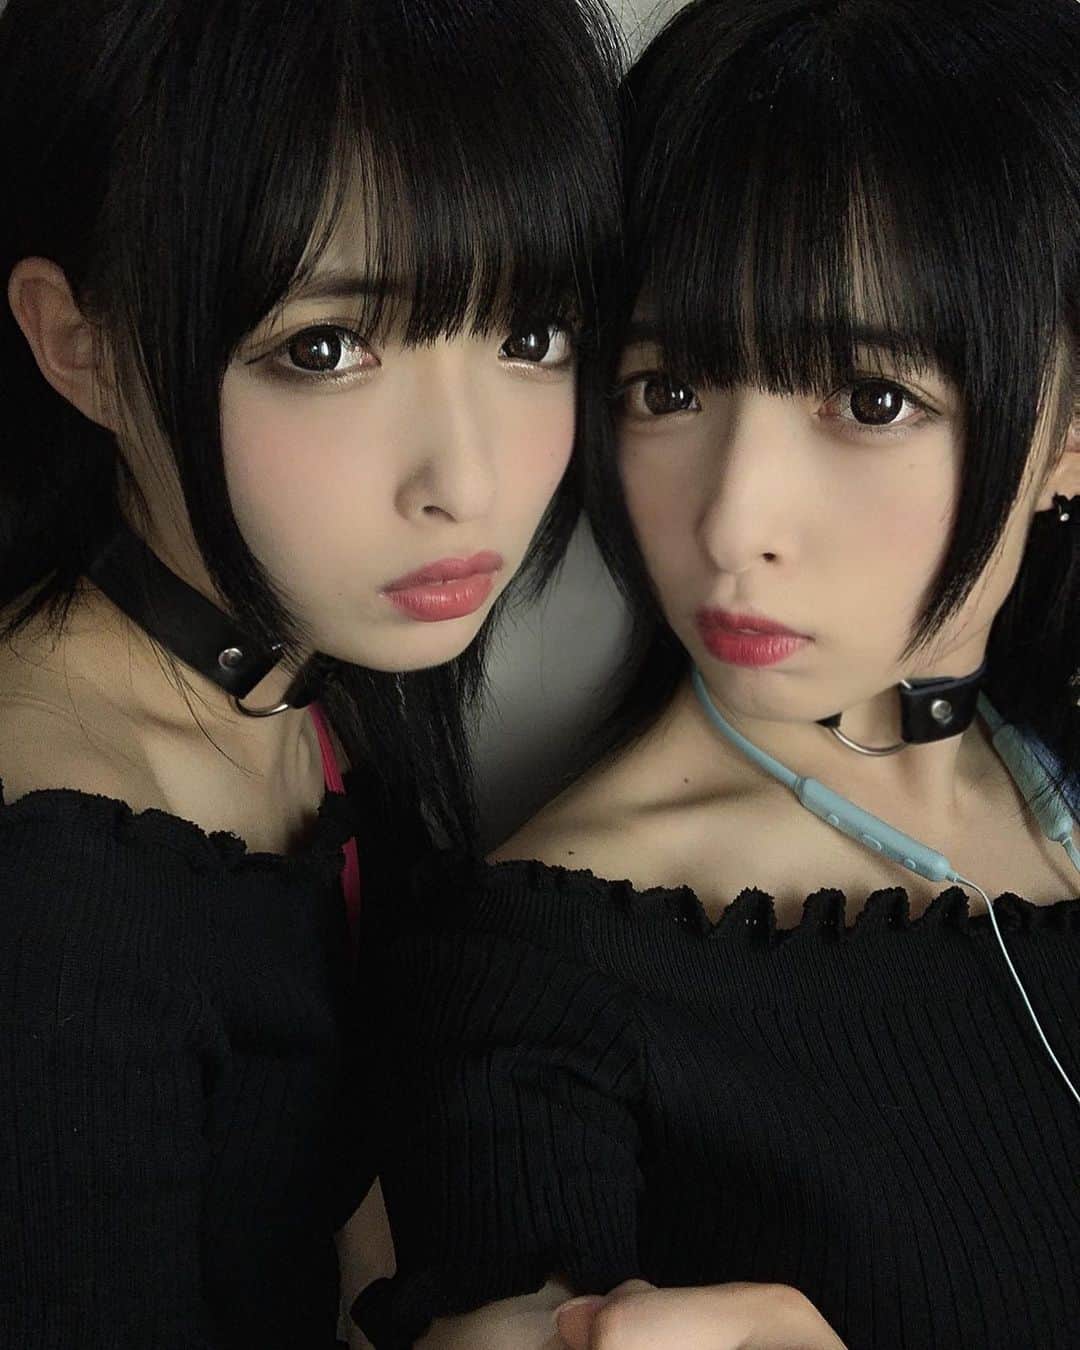 くにくにのインスタグラム：「・ ・ ▀▄▀▄▀▄▀▄▀▄▀▄▀▄▀▄▀▄▀▄▀ ・ ・ ❤︎BLACK❤︎KUNIKUNI❤︎ ・ ・ #くにくに#双子#ツインズ#黒髪#アイドル #IDOL#JAPAN#福井#ファッション#twins #KUNIKUNI#ootd#twinsfashion#코디#패션 #cute#BLACK#黒#夏#真っ黒コーデ ・ ・ ▀▄▀▄▀▄▀▄▀▄▀▄▀▄▀▄▀▄▀▄▀ ・ ・」